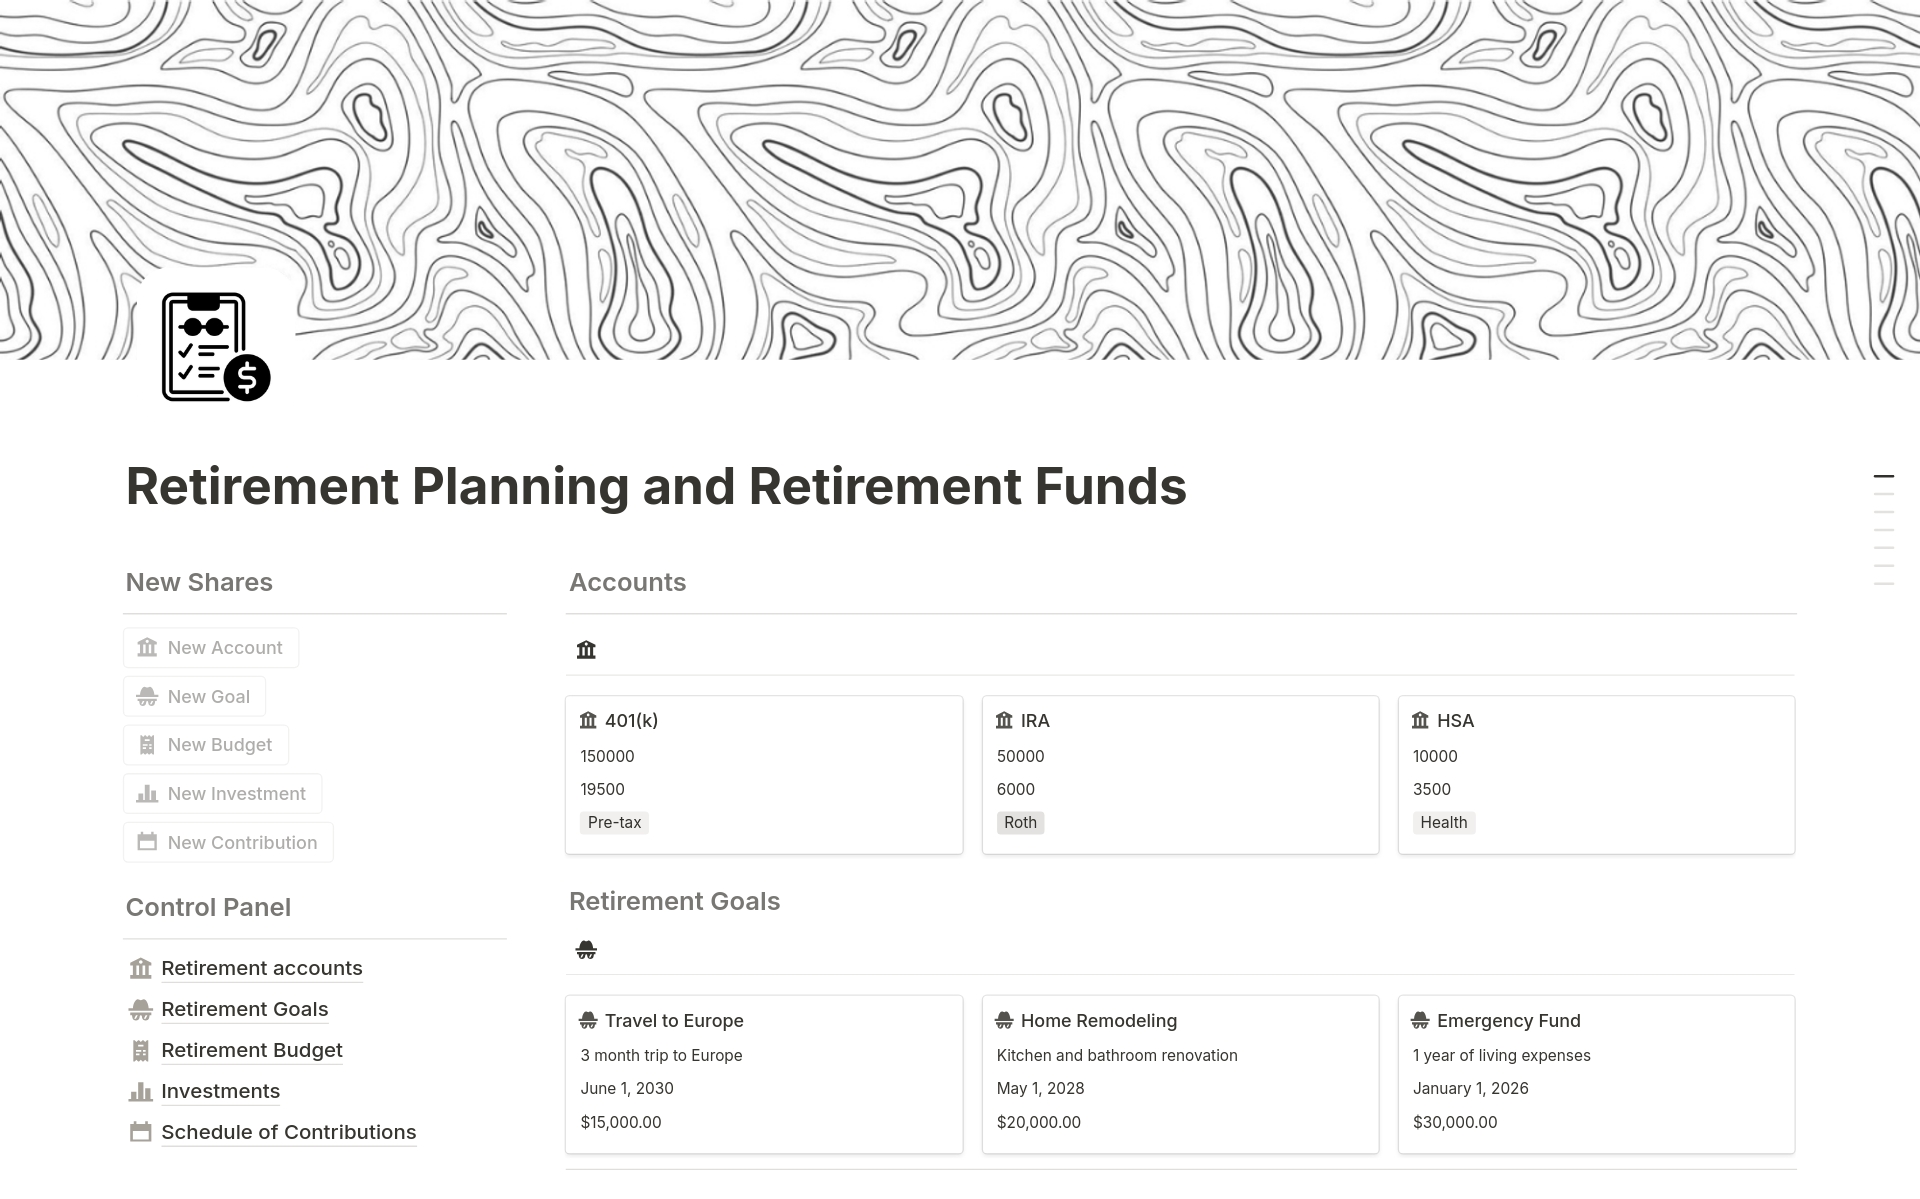 Uma prévia do modelo para Retirement Planning and Retirement Funds